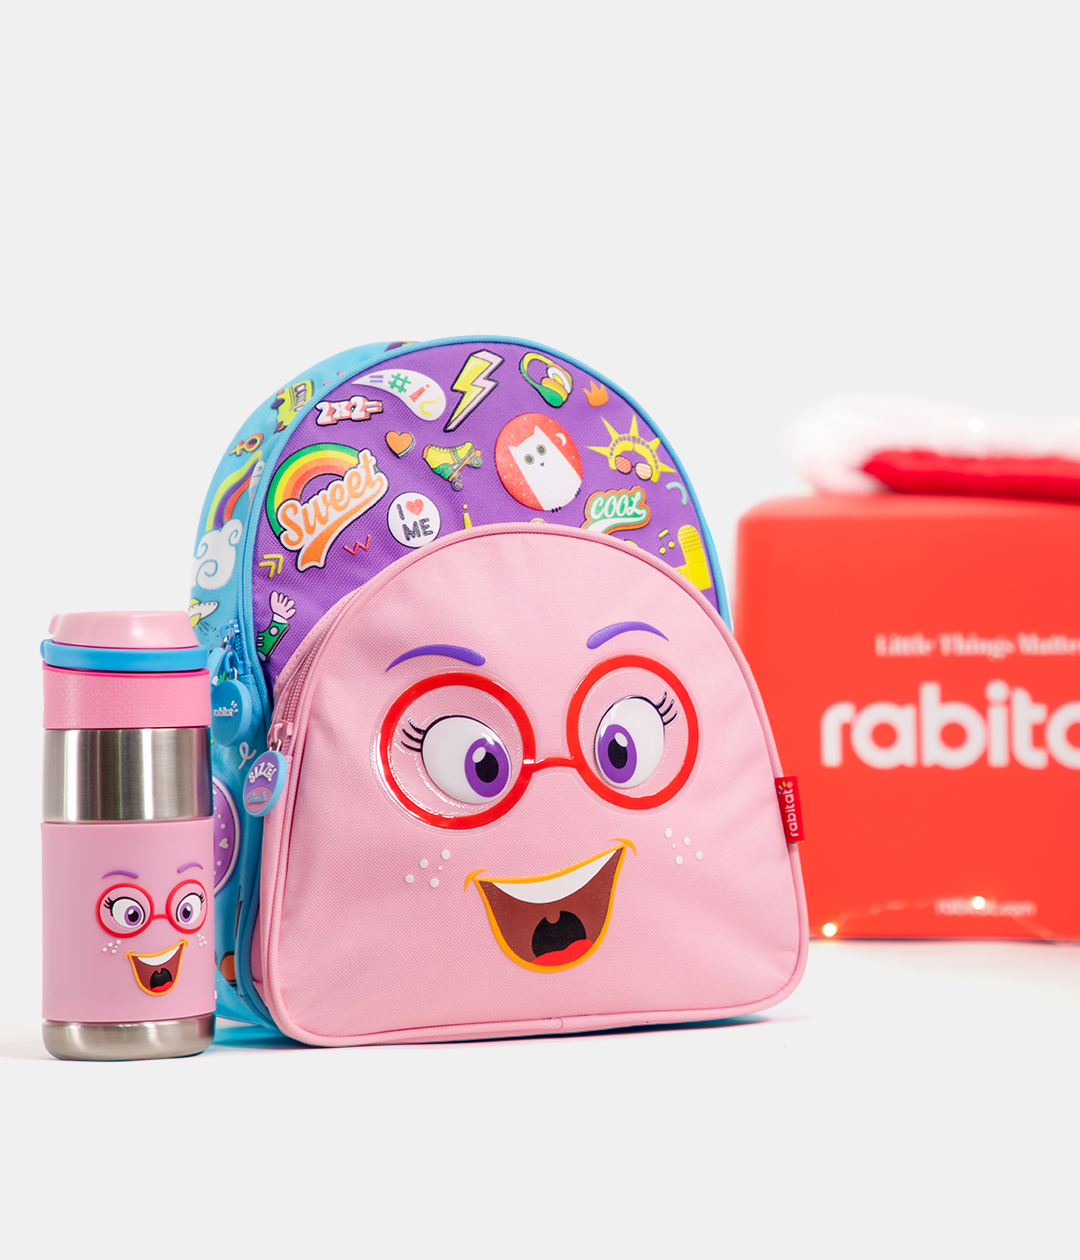 Rabitat Smash School bag